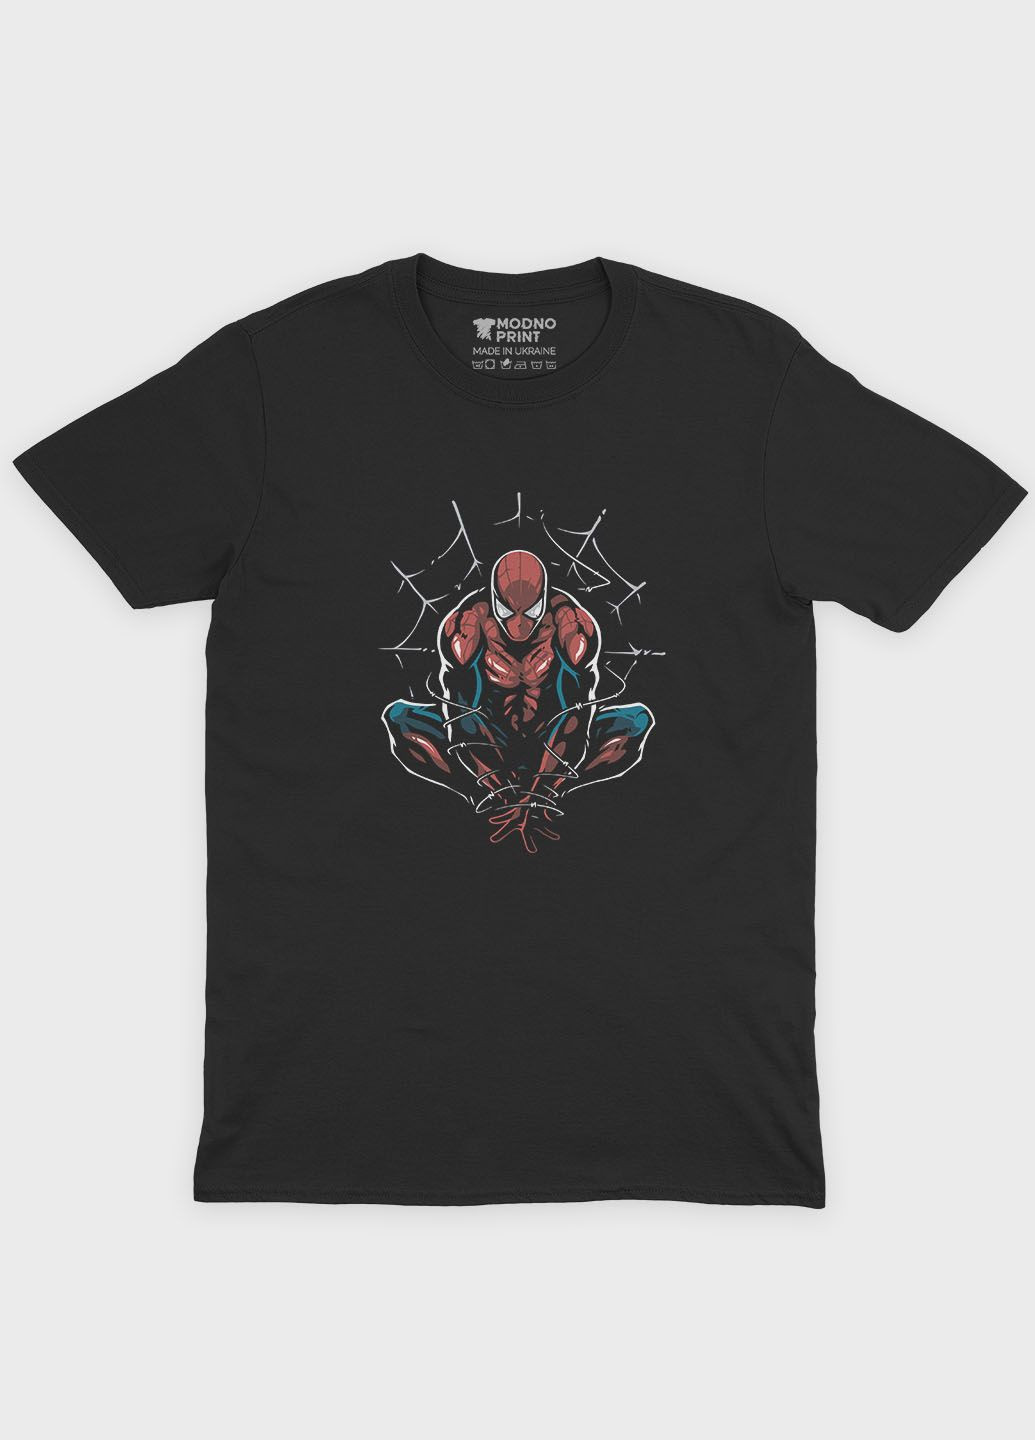 Черная демисезонная футболка для девочки с принтом супергероя - человек-паук (ts001-1-gl-006-014-086-g) Modno